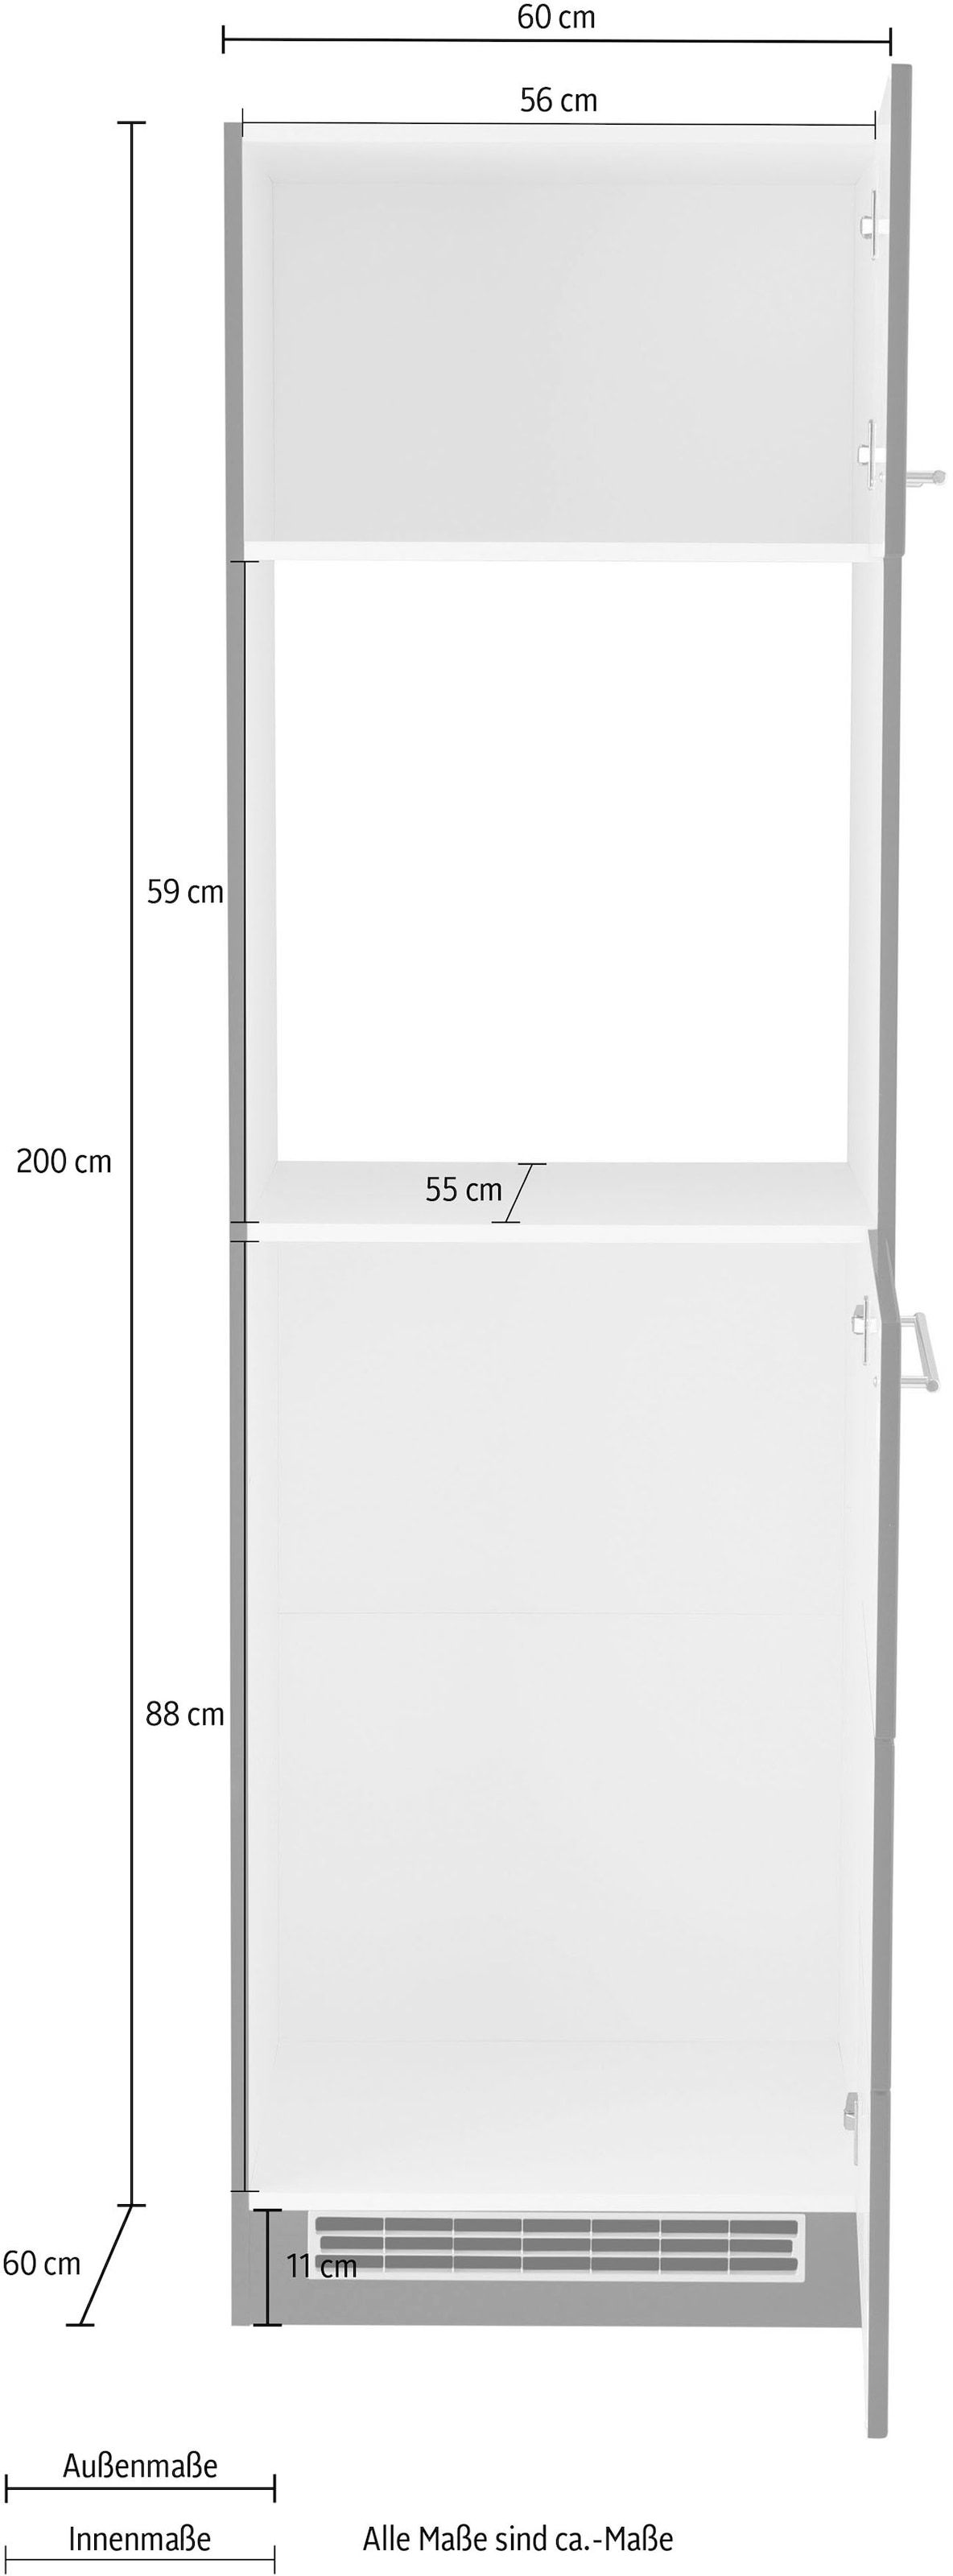 Kochstation Backofen/Kühlumbauschrank »KS-Wien«, 60 cm breit, für autarken Backofen und Einbaukühlschrank